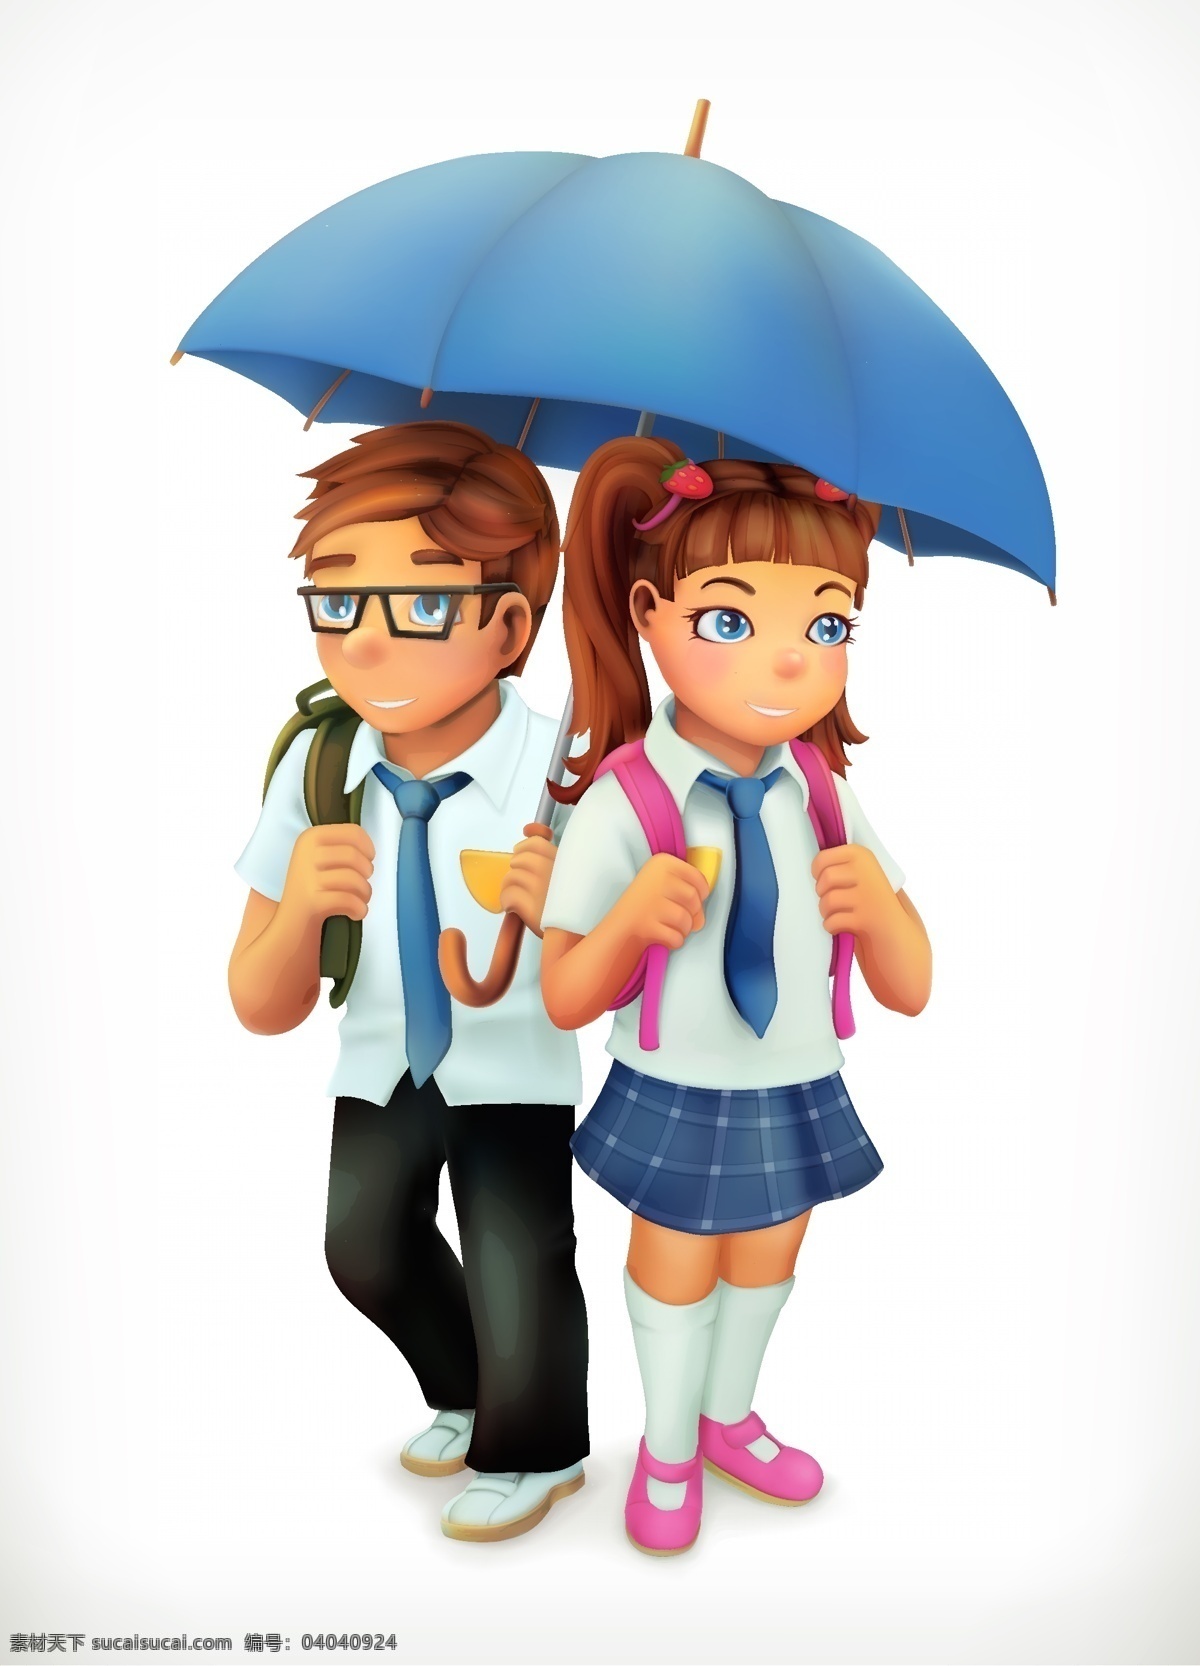 上学的孩子 卡通 打伞 可爱 孩子 学生